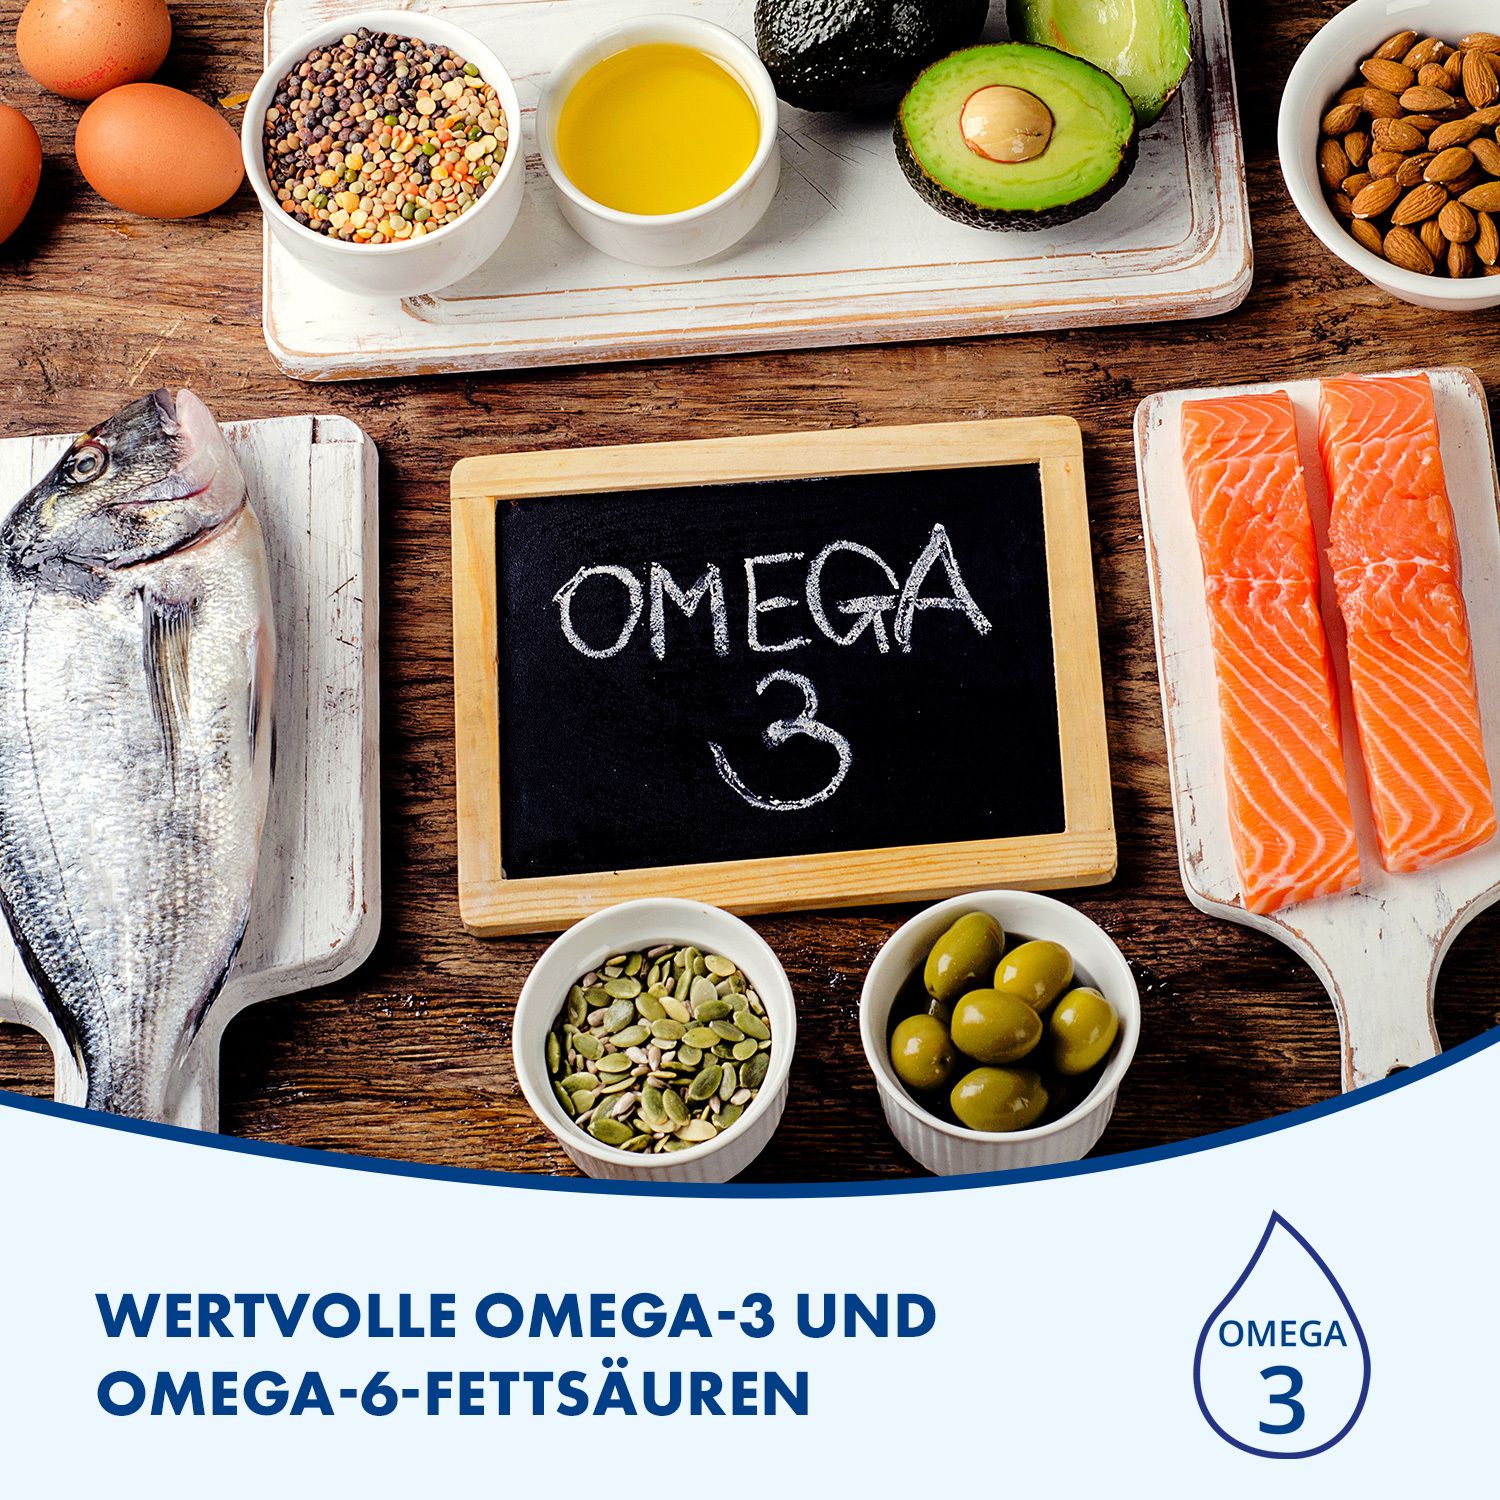 FOKUS IQ QUIRIS zur Unterstützung geistiger Leistungsfähigkeit mit Omega-3 und 6 und Vitamin-Mineralstoff Komplex